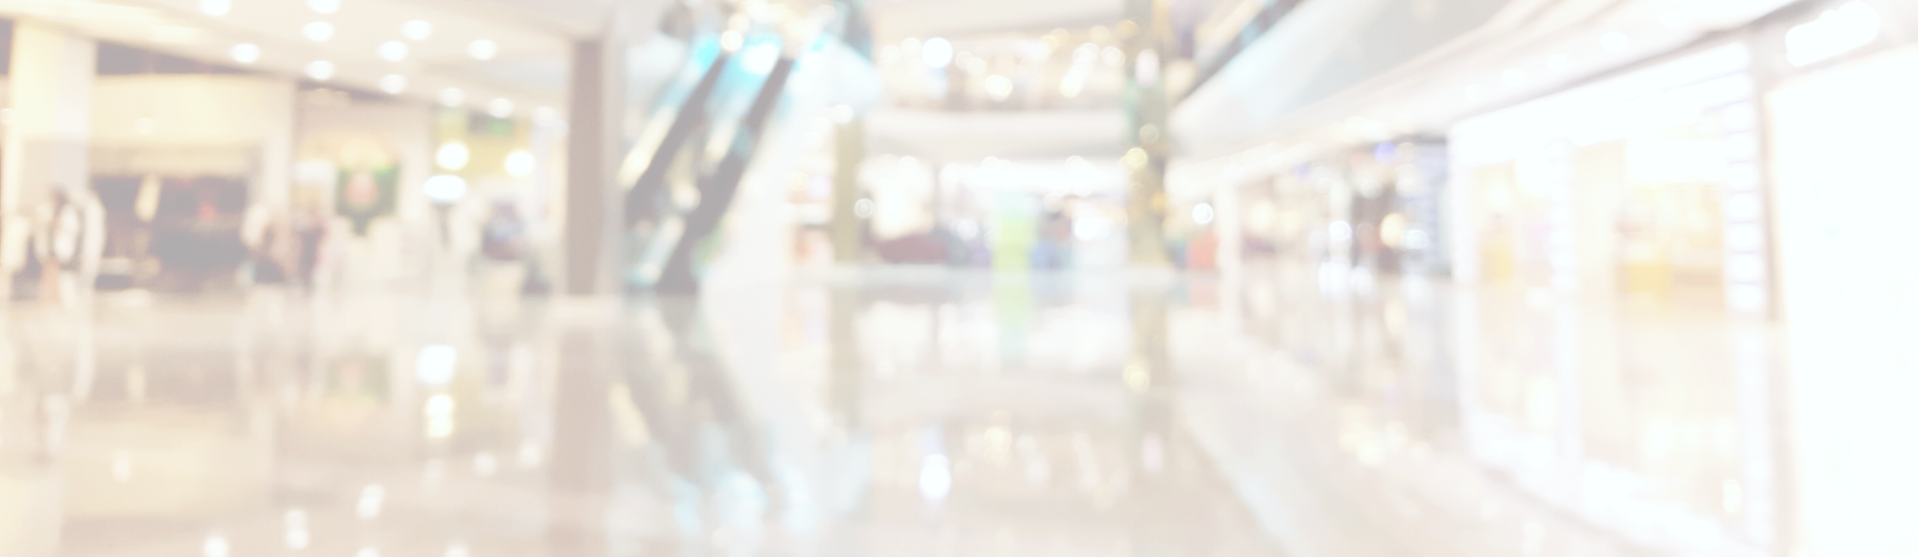 blurred mall shot